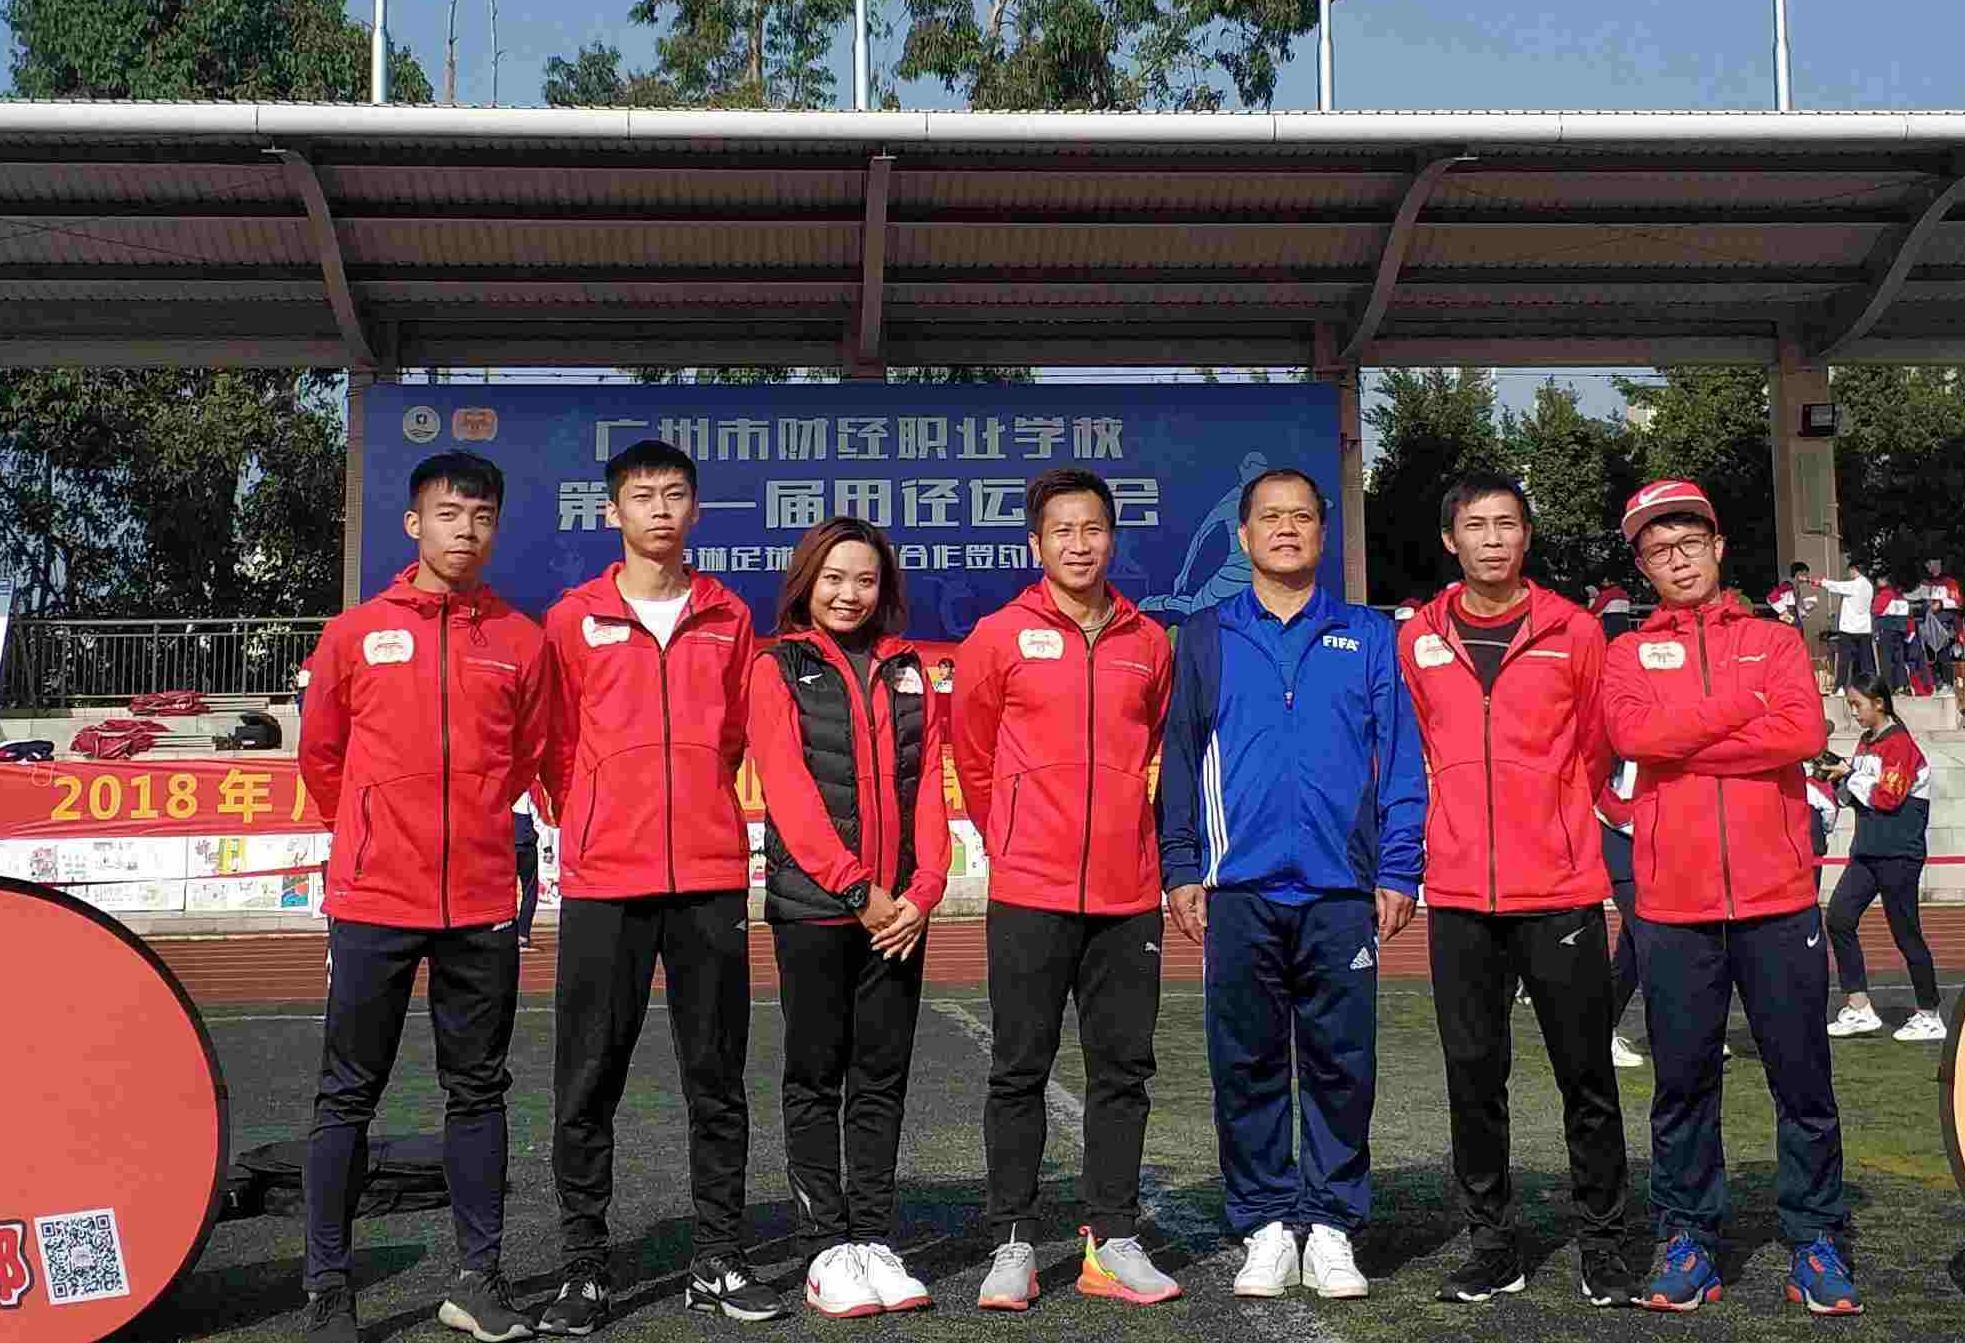 卢琳足球俱乐部牵手广州市财经职业学校,探索